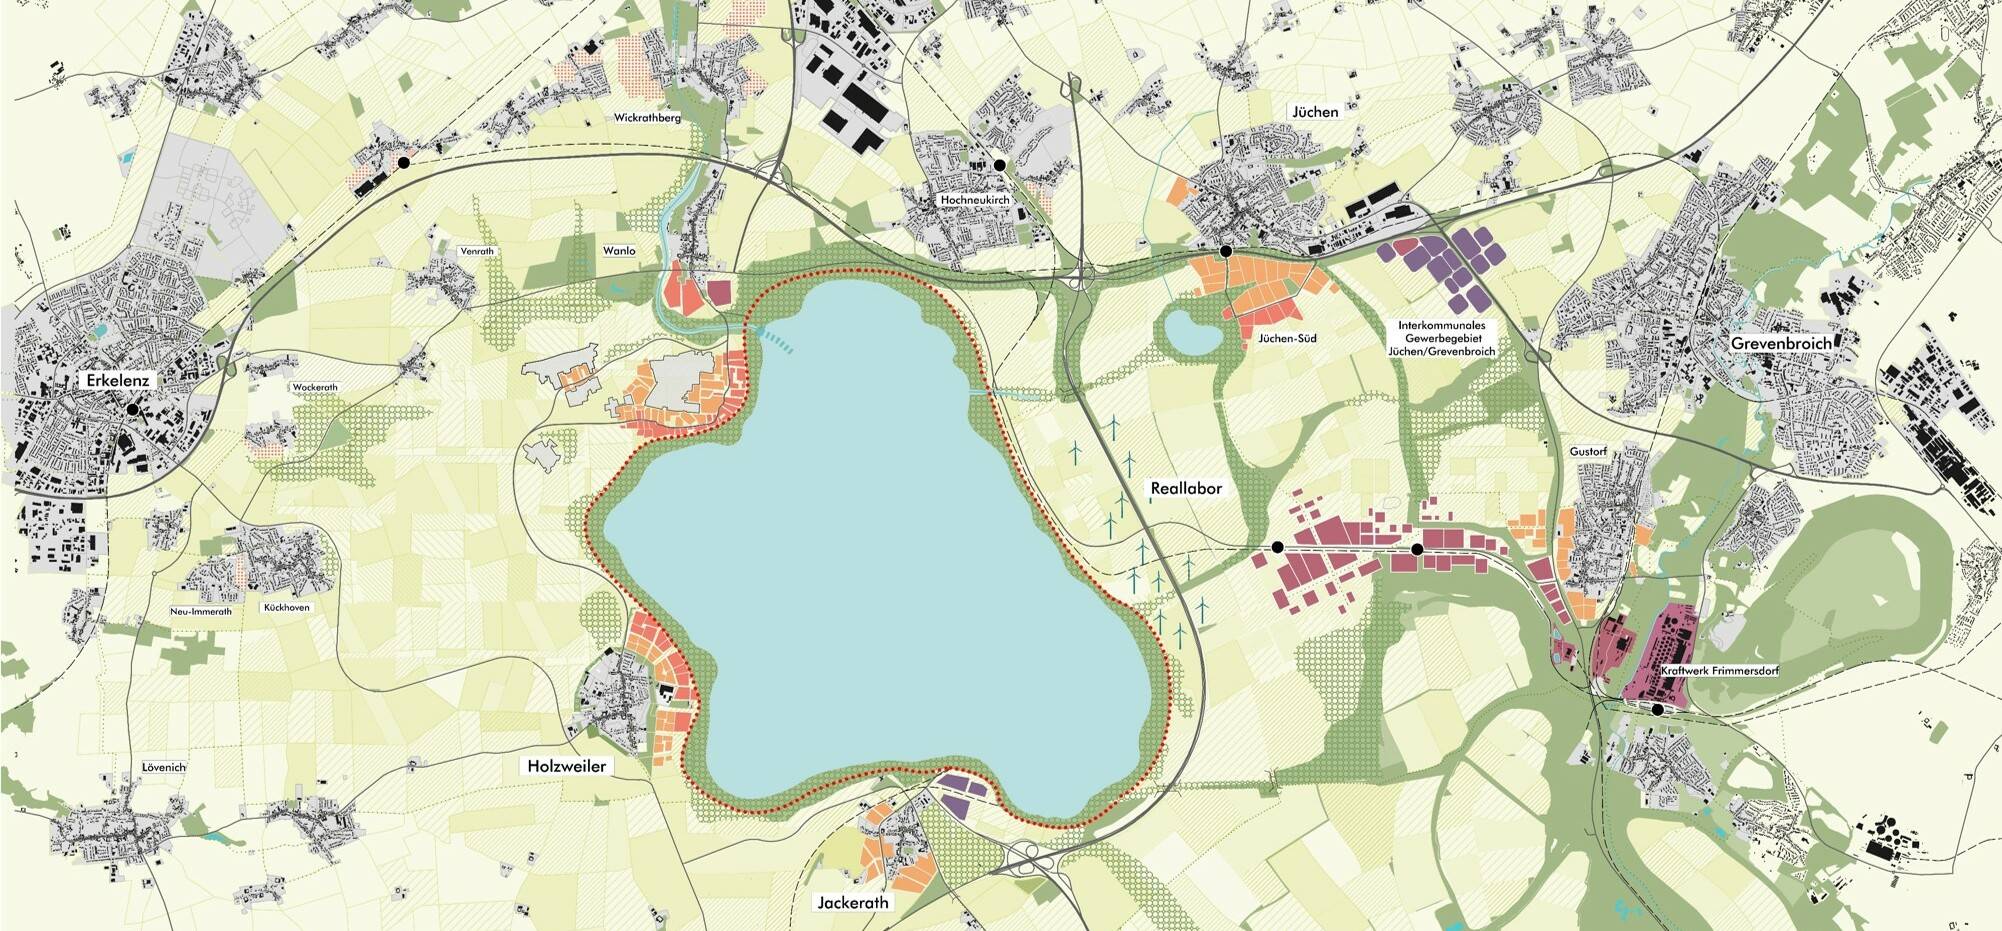  Nach Beendigung des aktiven Tagebaus Garzweiler soll ab Mitte der 2030er Jahre in der Region einer der größten Seen Nordrhein-Westfalens entstehen.  